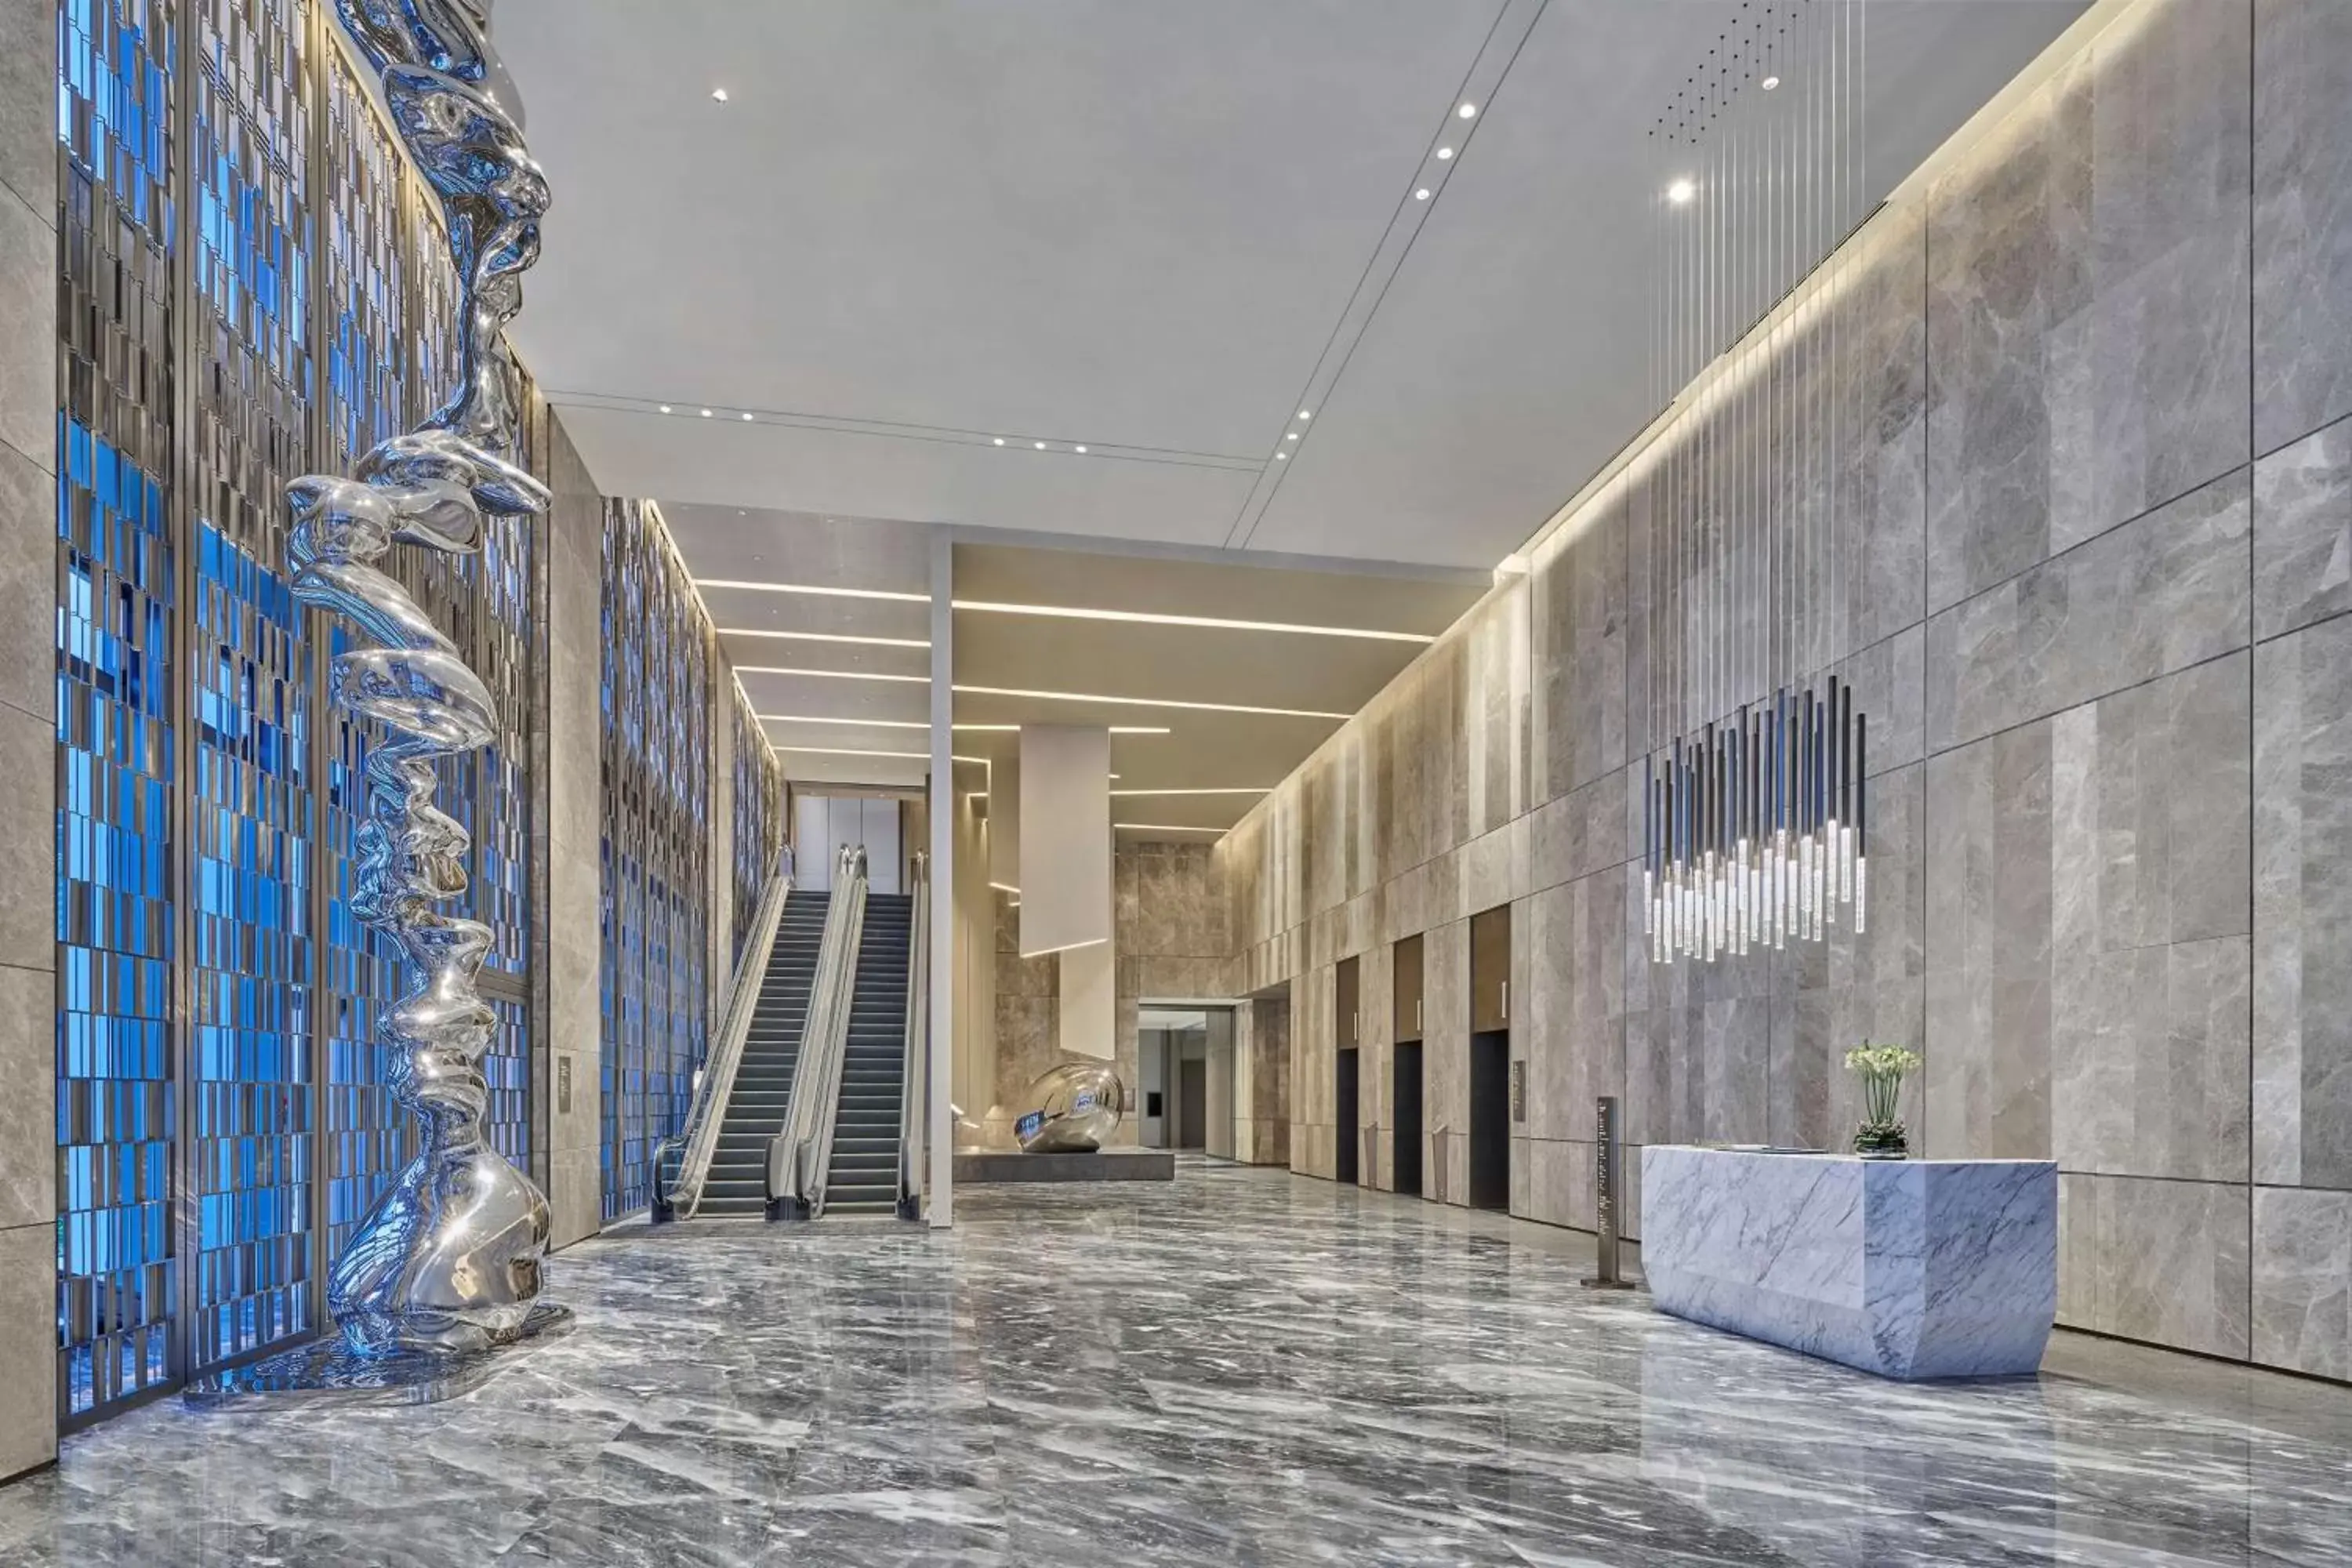 Lobby or reception in Hilton Chongqing Liangjiang New Area